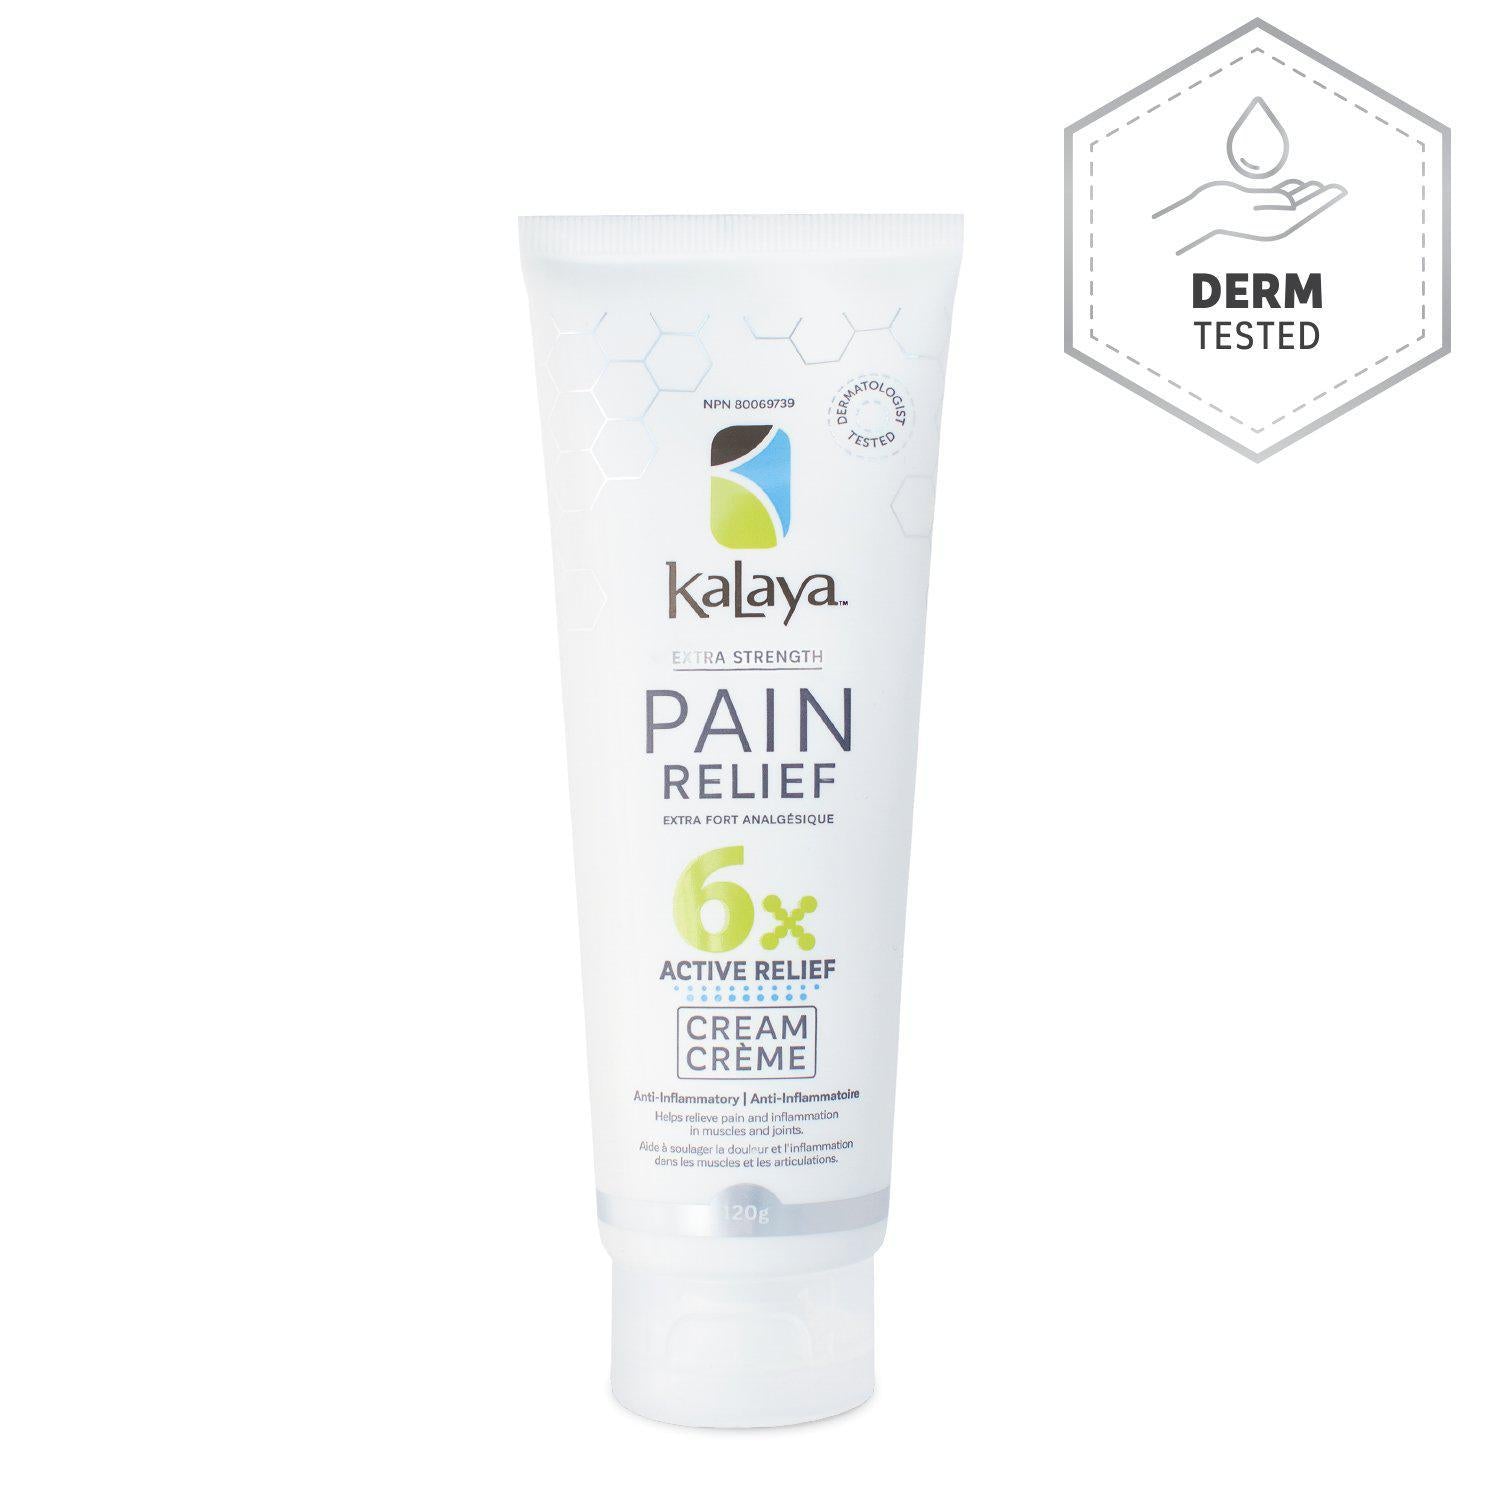 Kayala Pain Relief Cream - Anti-Inflammatory - 120g